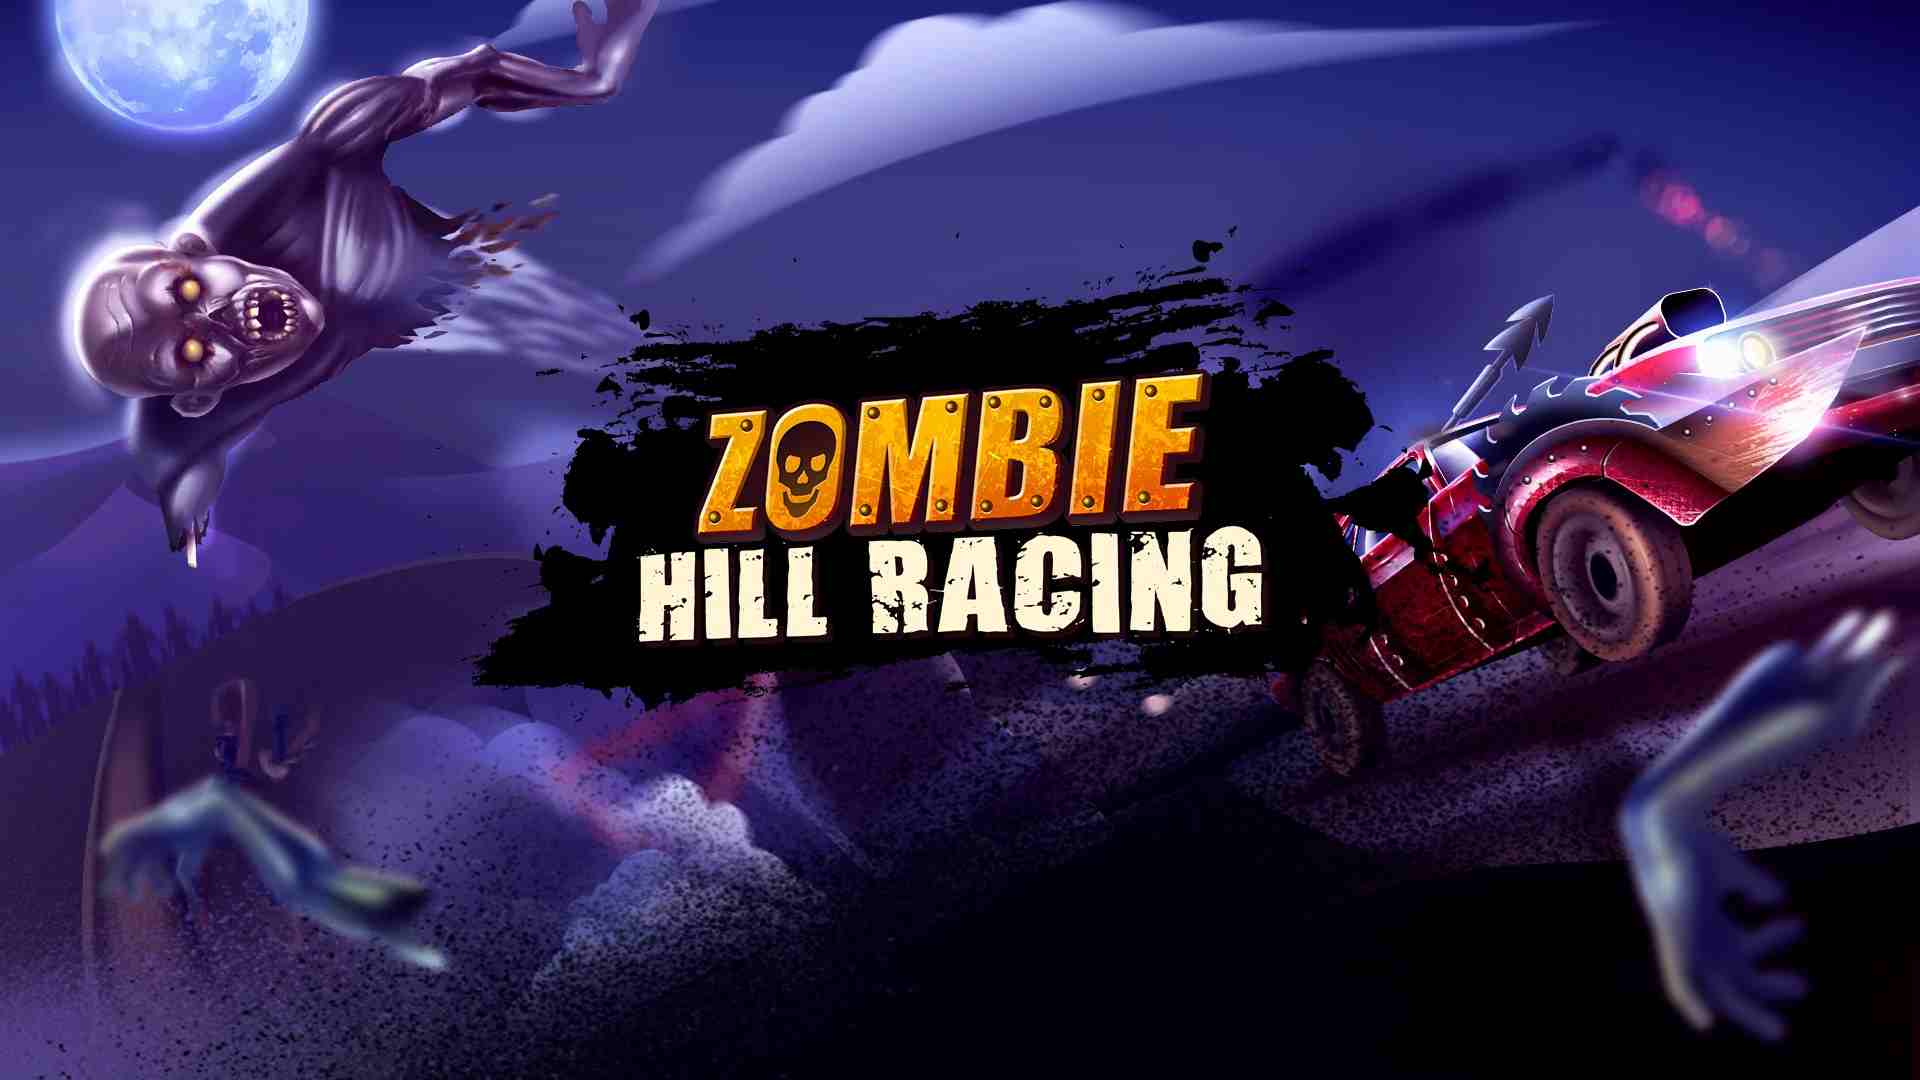 Zombie Hill Racing 2.3.2 APK MOD [Menu LMH, Lượng Tiền Rất Lớn, Kim cương, Mua sắm miễn phí]